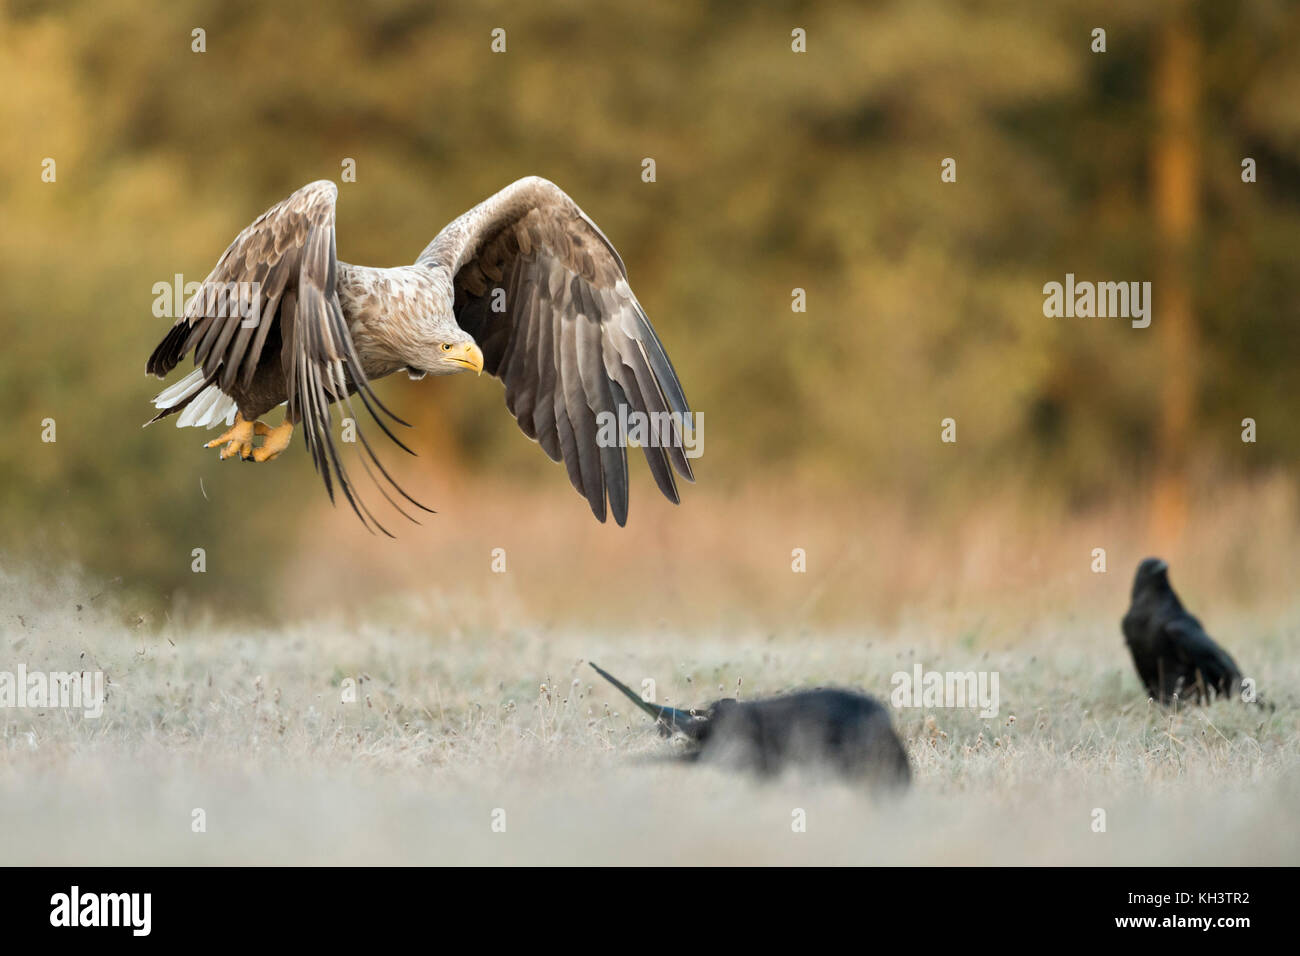 Aquila dalla coda bianca / Aquila di mare / Seeadler ( Haliaetus albicilla ) in volo vicino sopra terra congelata, lungo il bordo di una foresta, calda luce del mattino Foto Stock